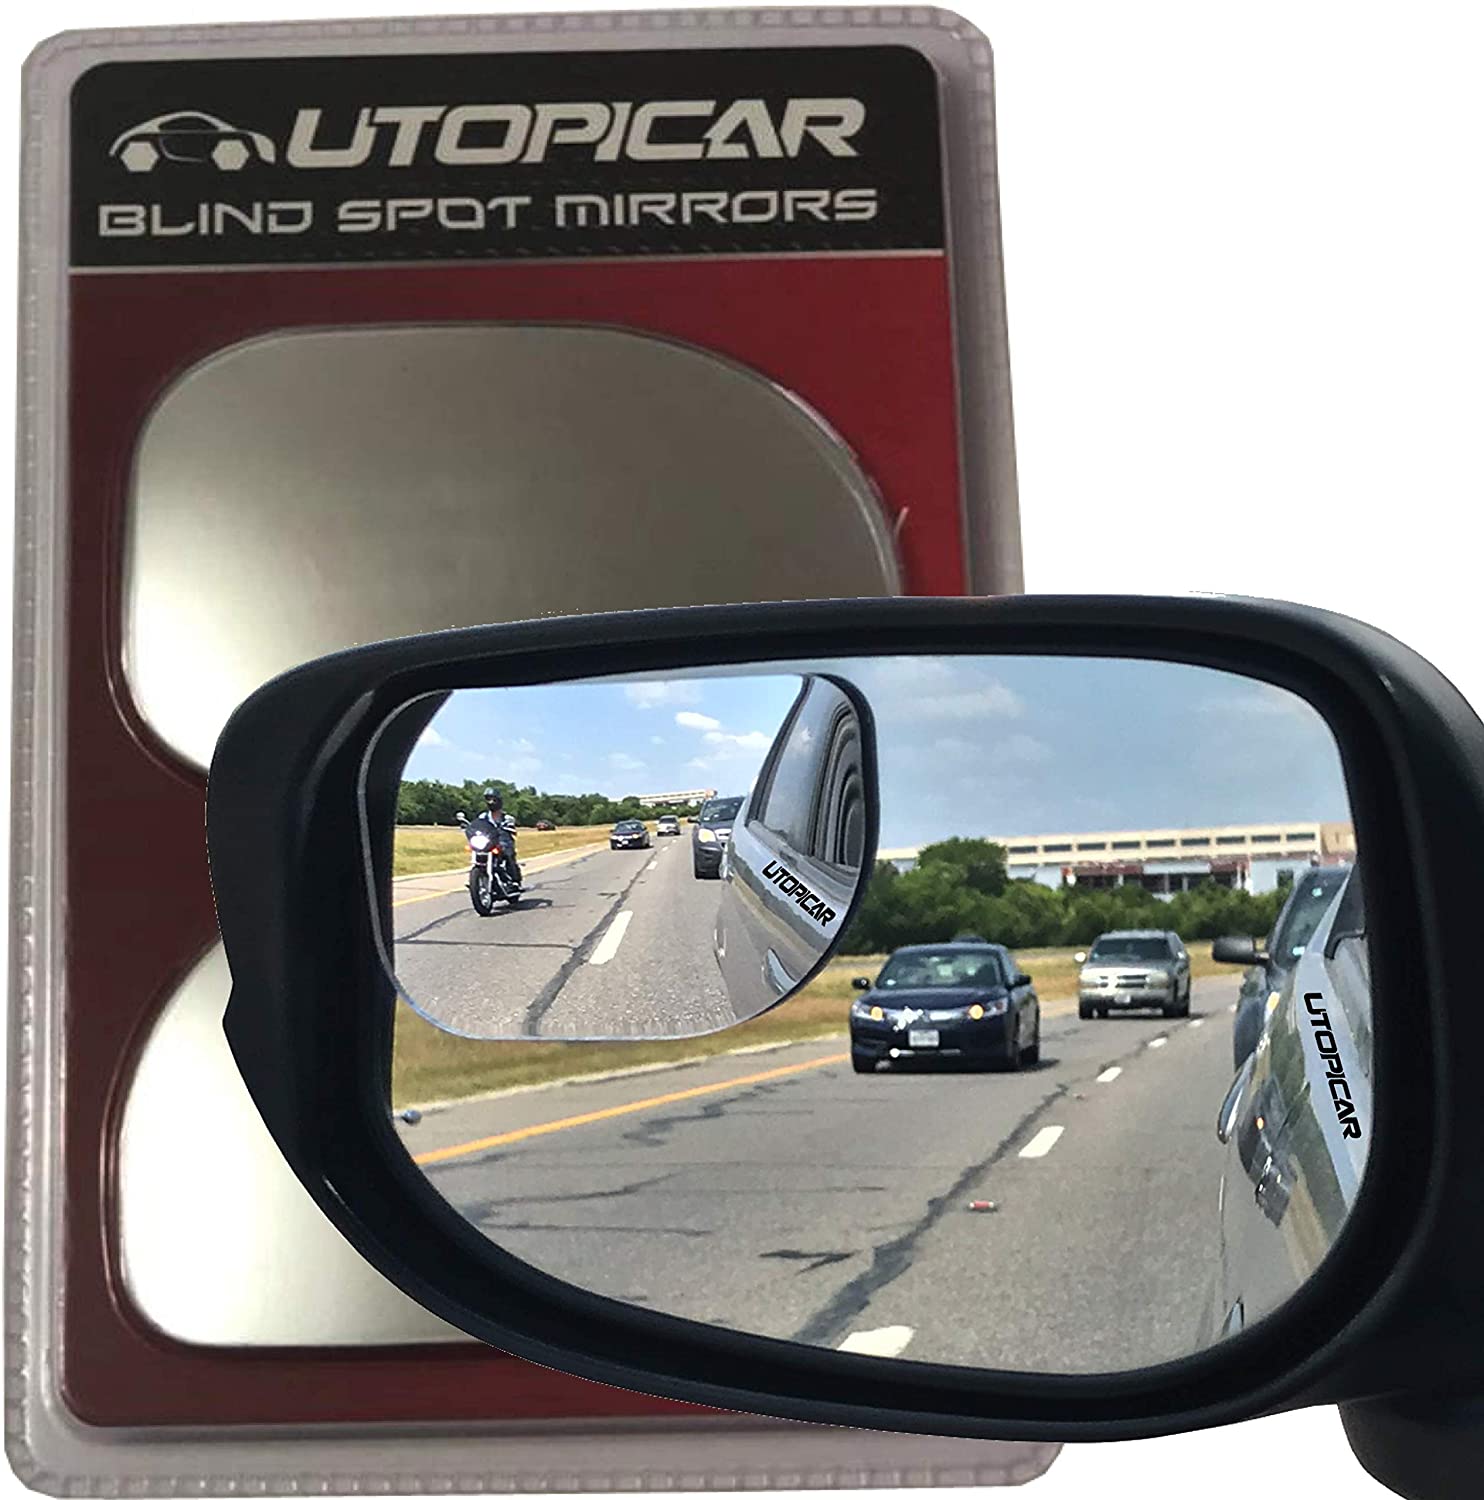 Utopicar XL Truck & Van Blind Side Mirror, 2-Pack